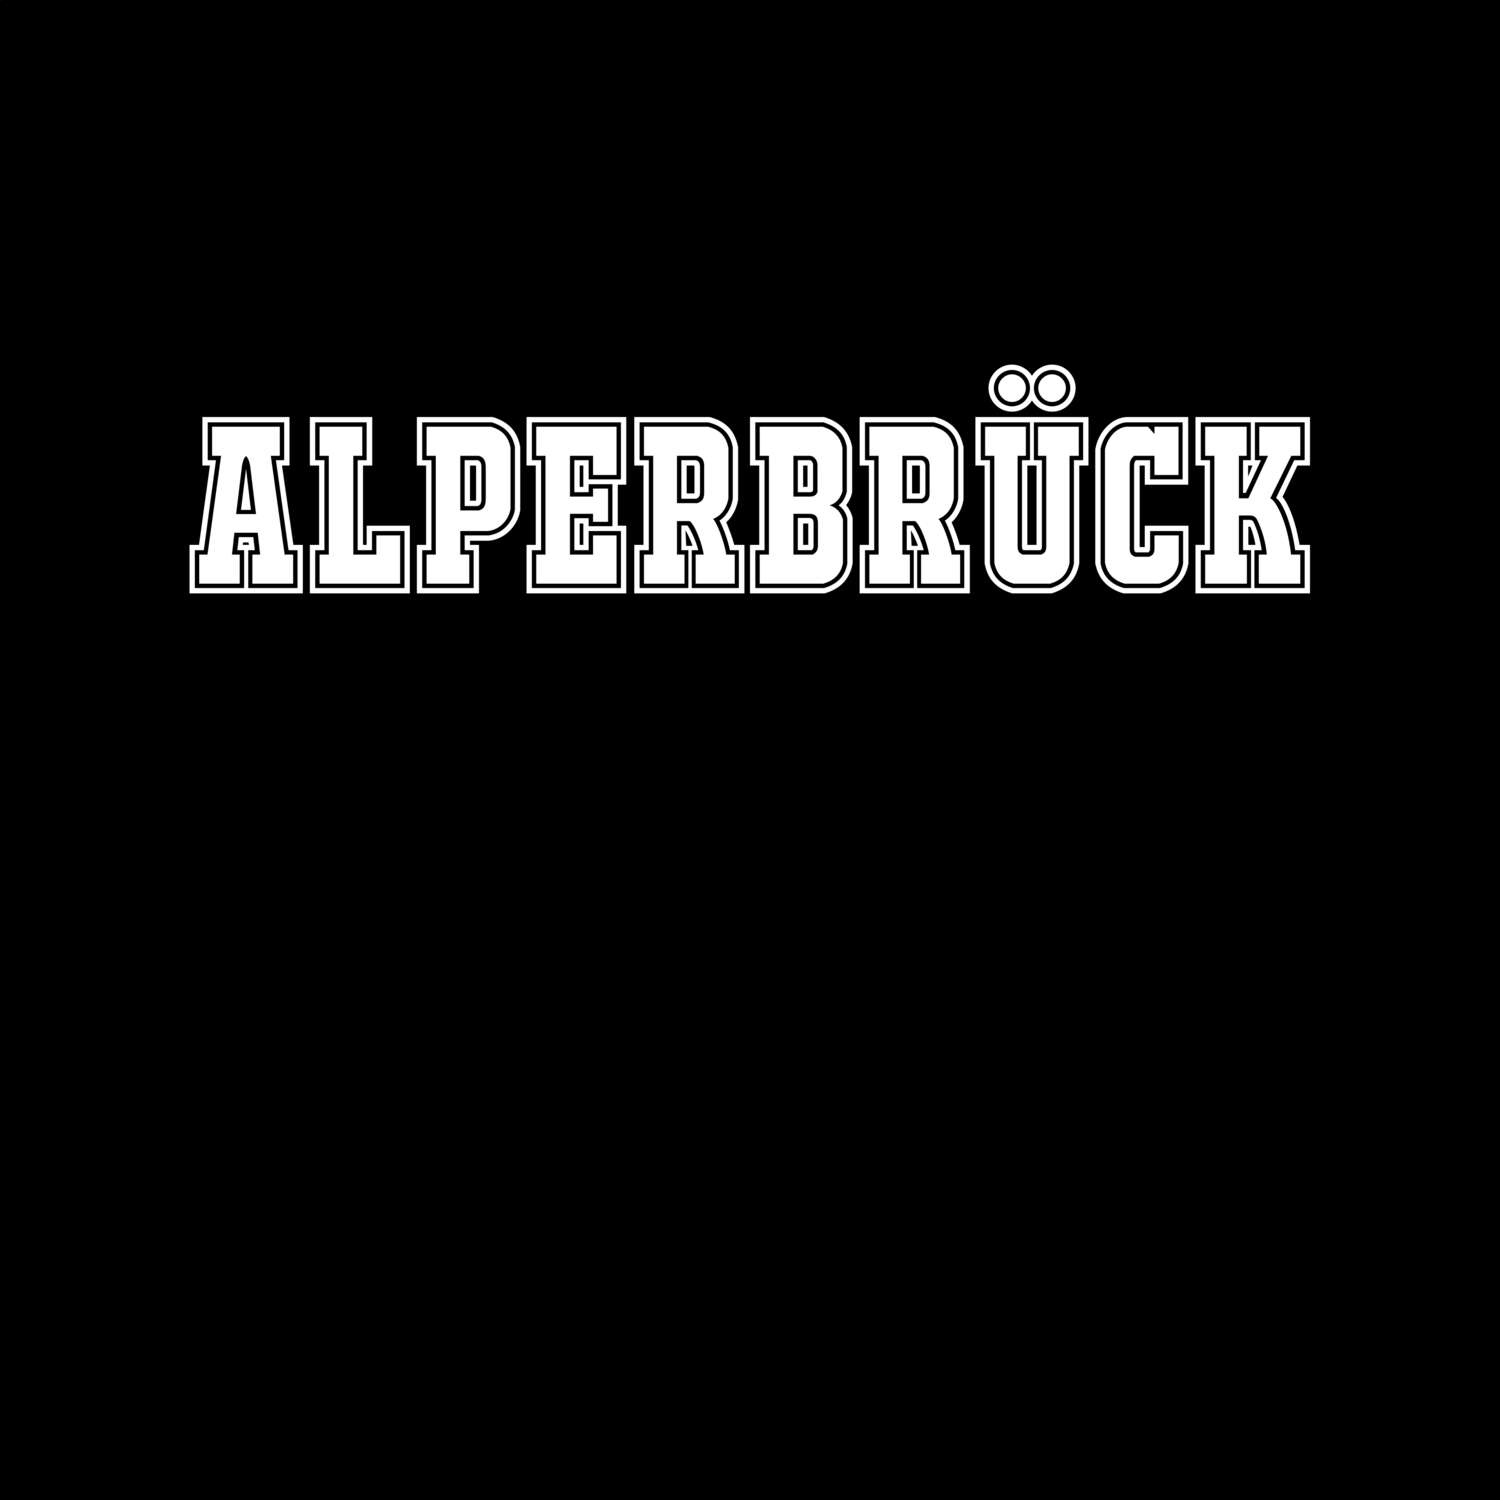 Alperbrück T-Shirt »Classic«